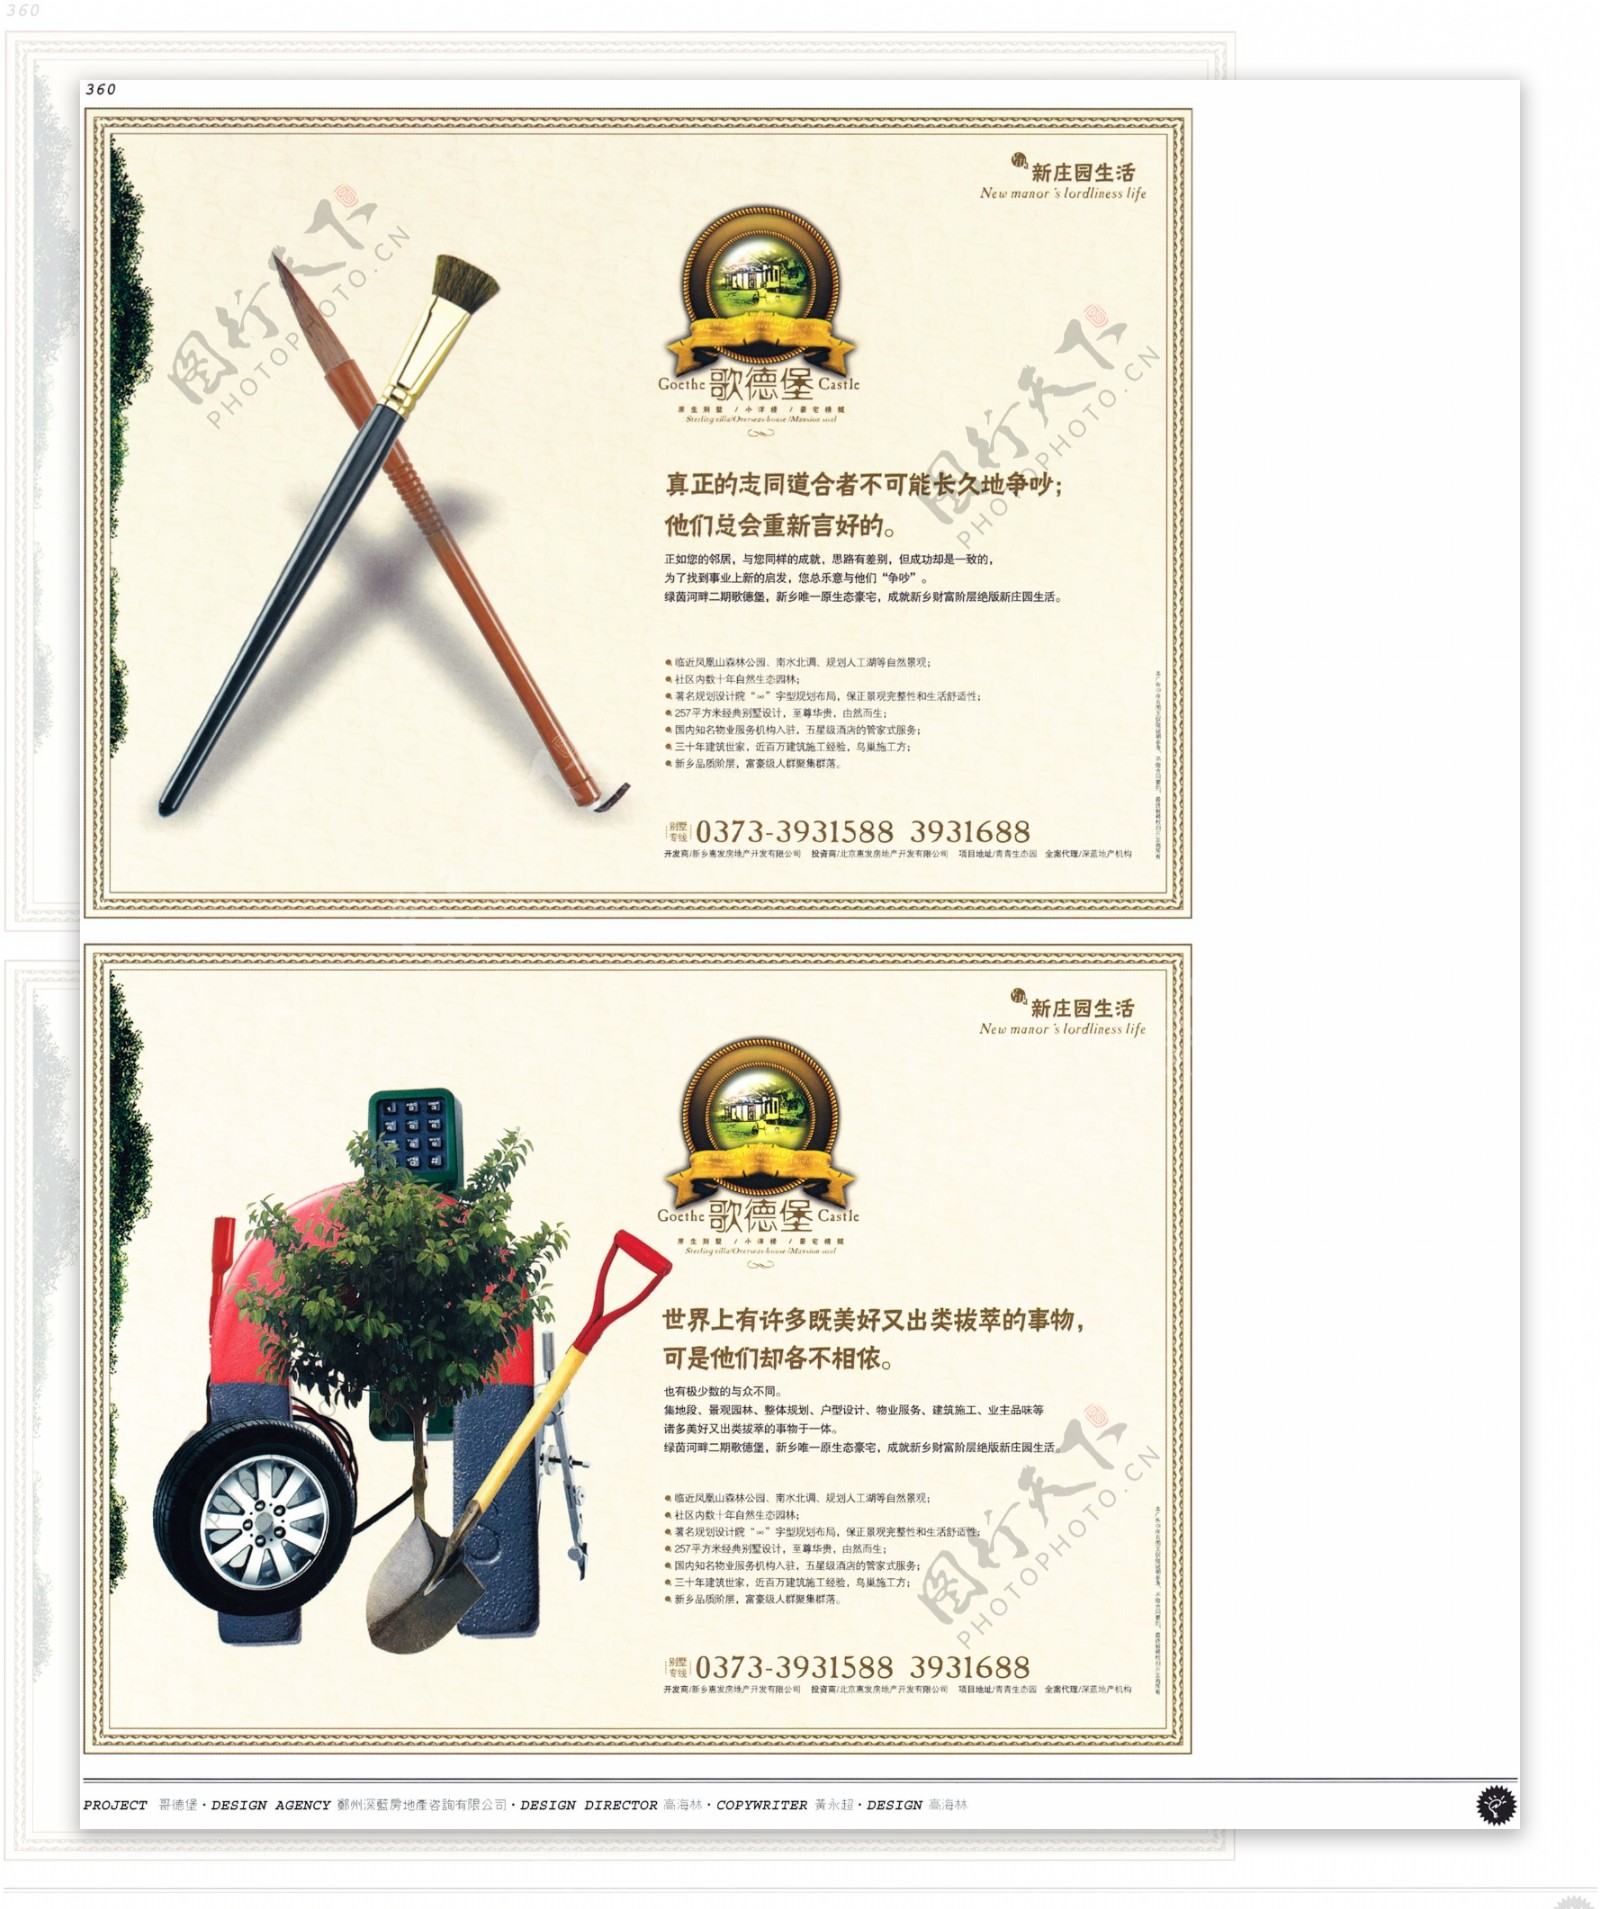 中国房地产广告年鉴第二册创意设计0342